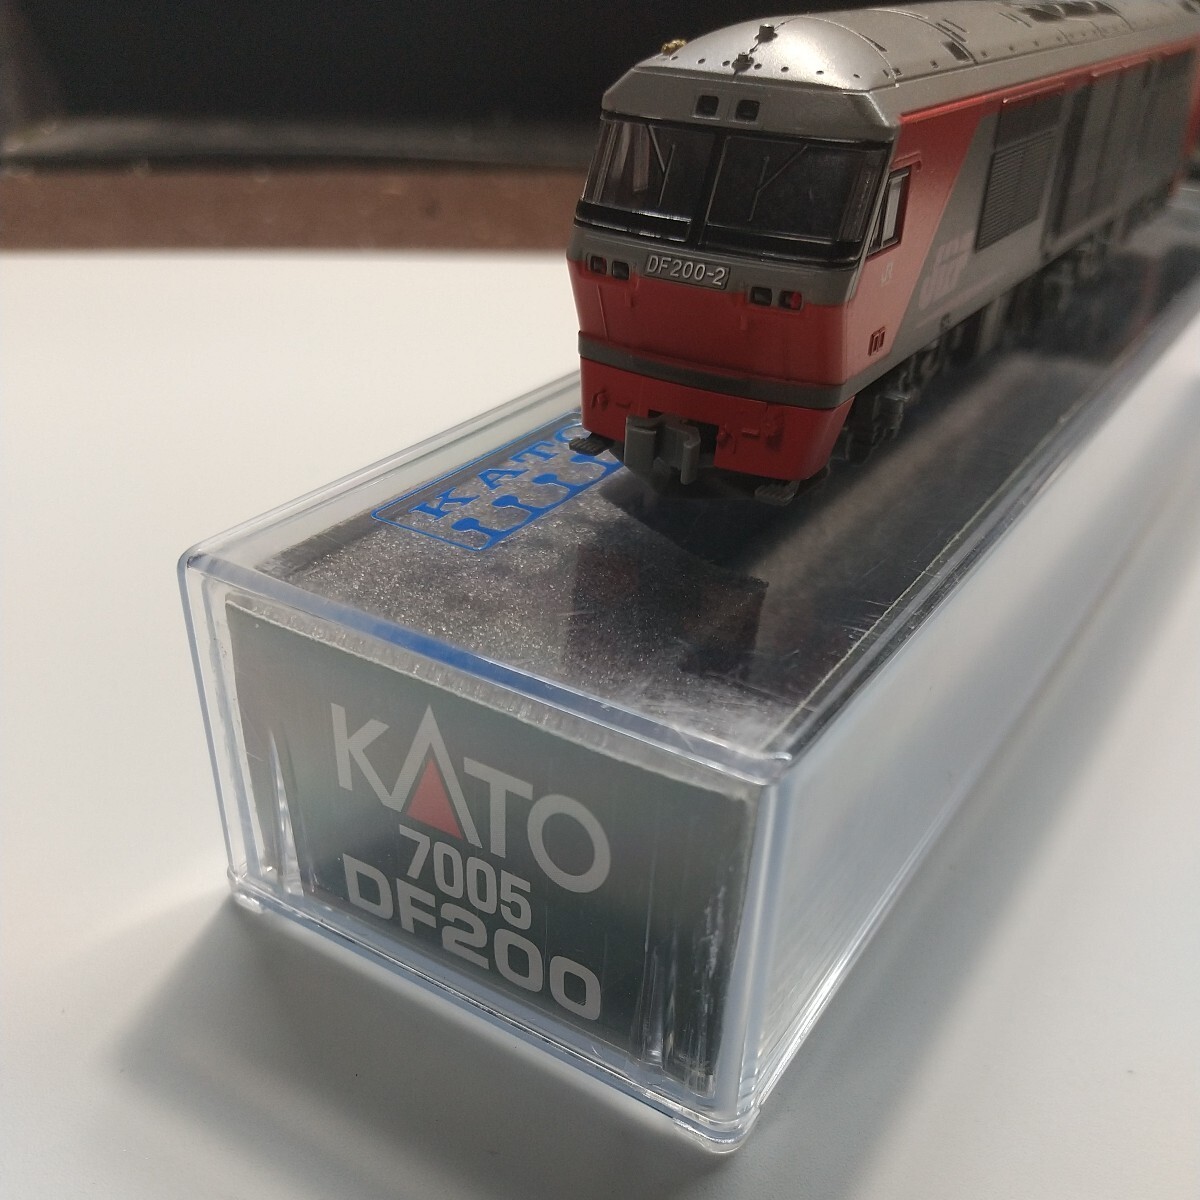 KATO 7005 DF200 Nゲージ機関車_画像1